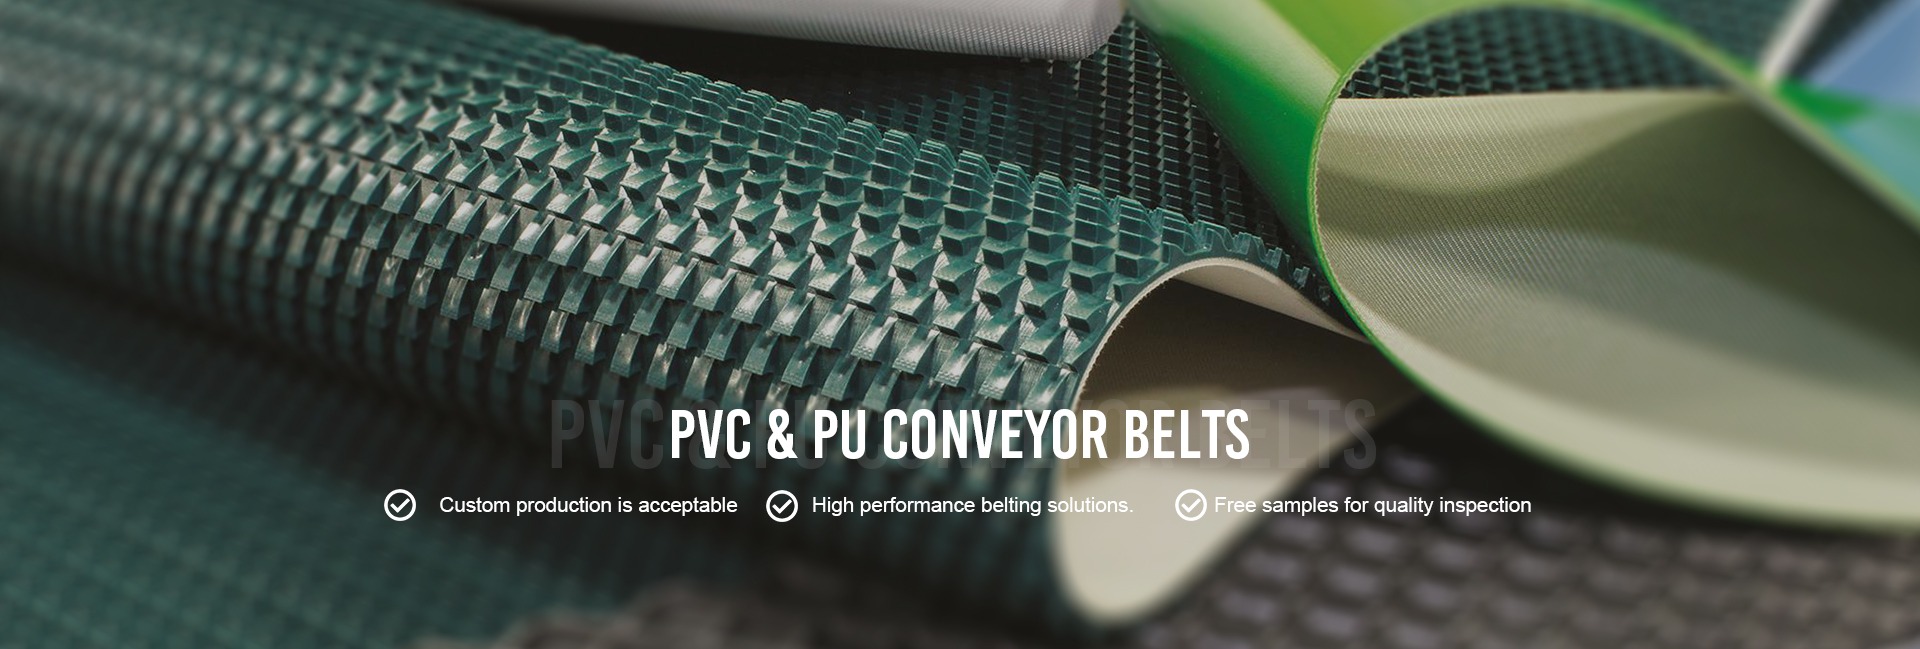 PVC :PU belt